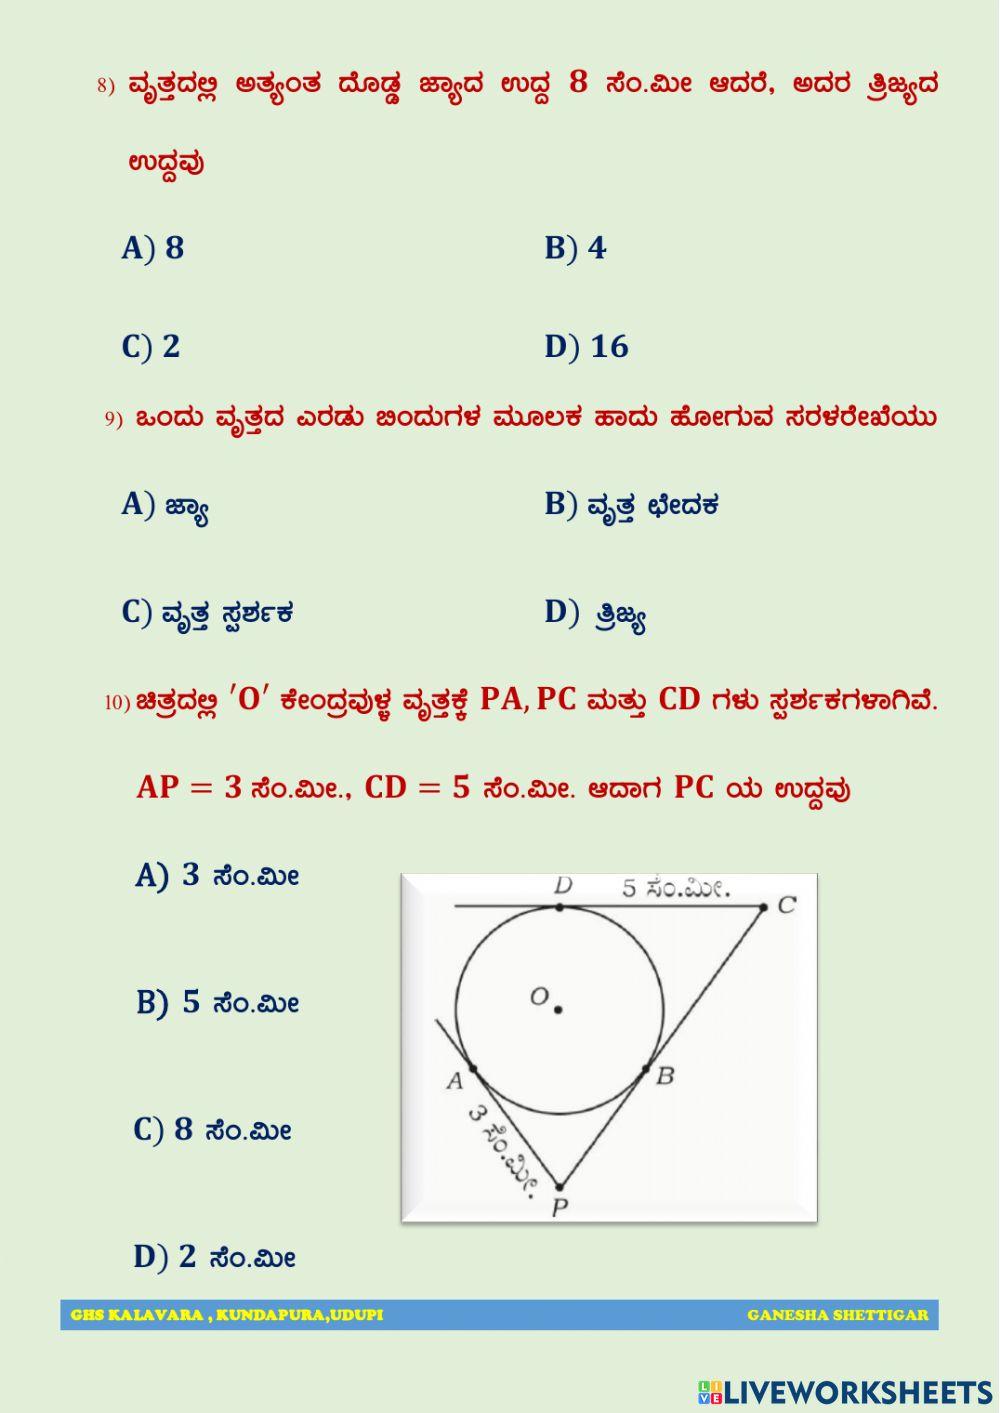 GS LIVE QUIZ 06 - 10-06-2021 : Kannada Medium